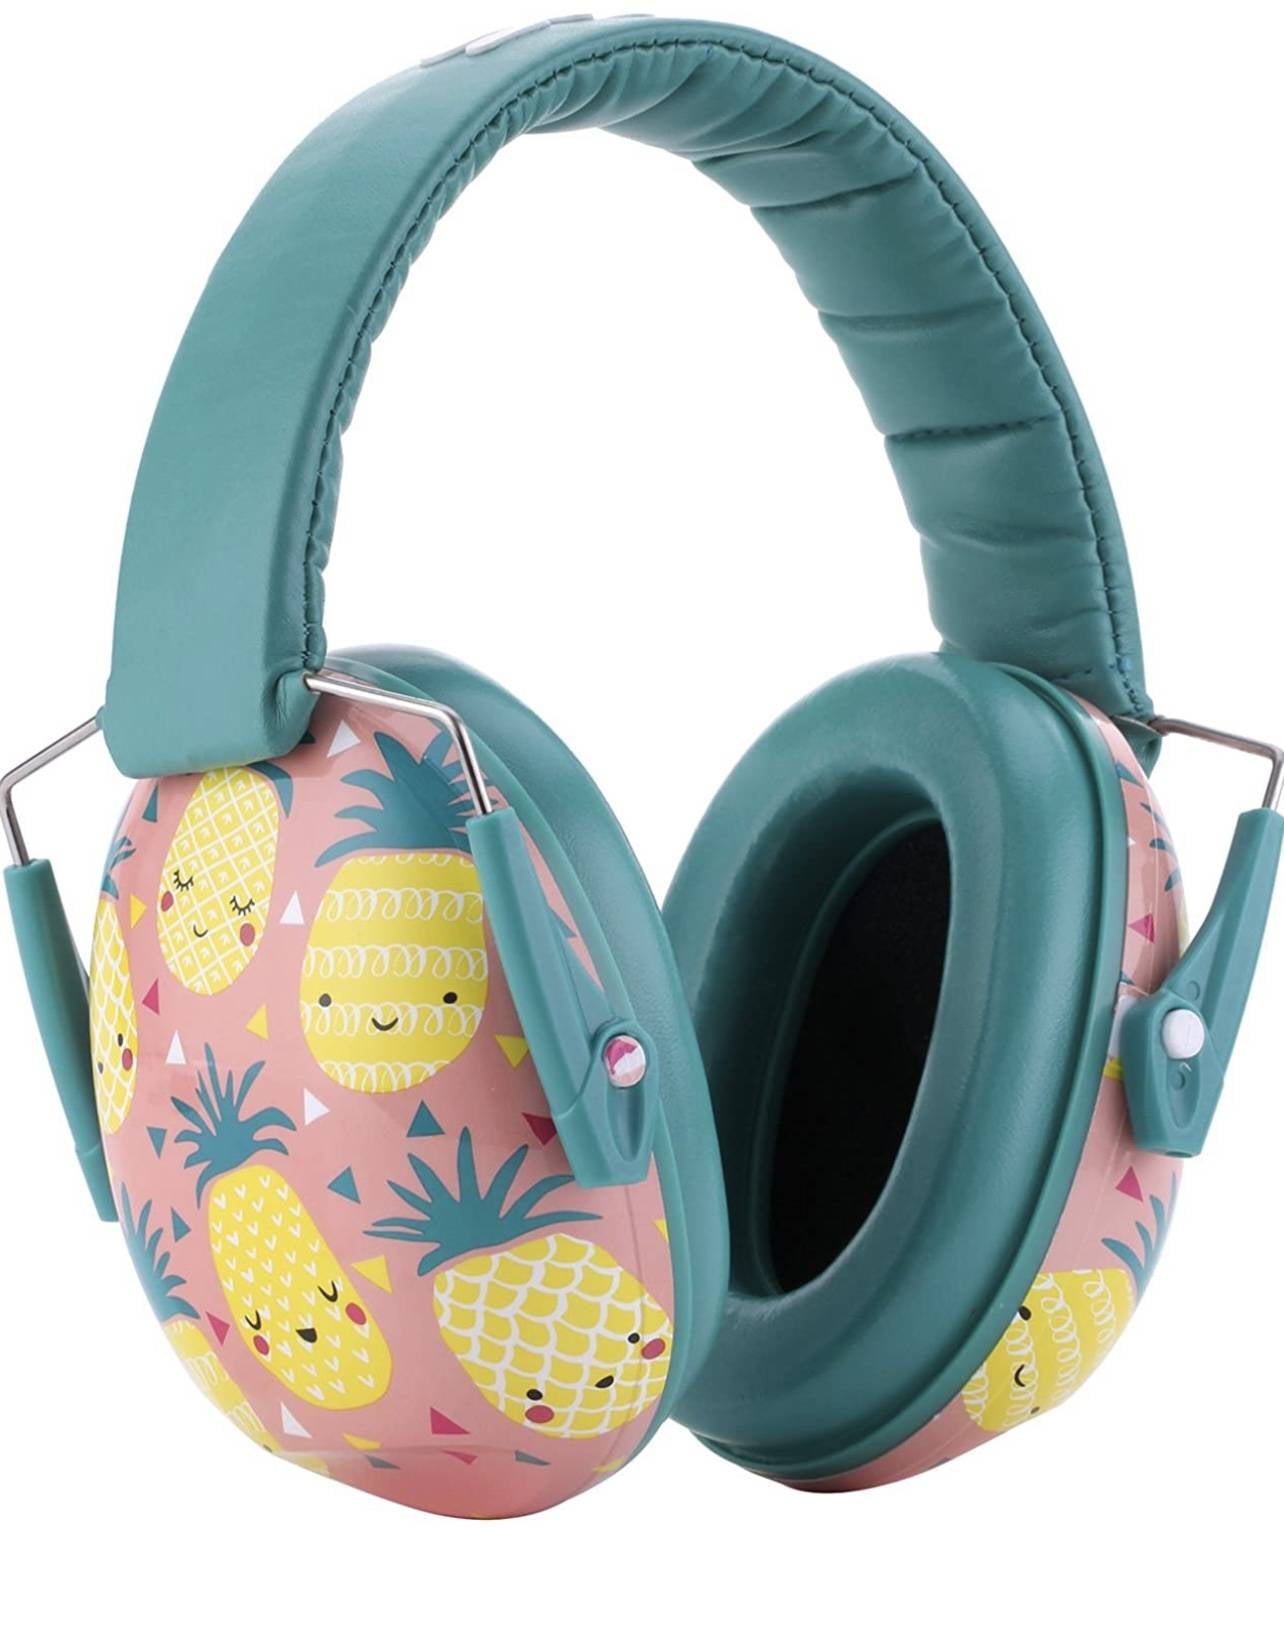 Snug Kids - Protección de oídos para niños, orejeras con cancelación de ruido